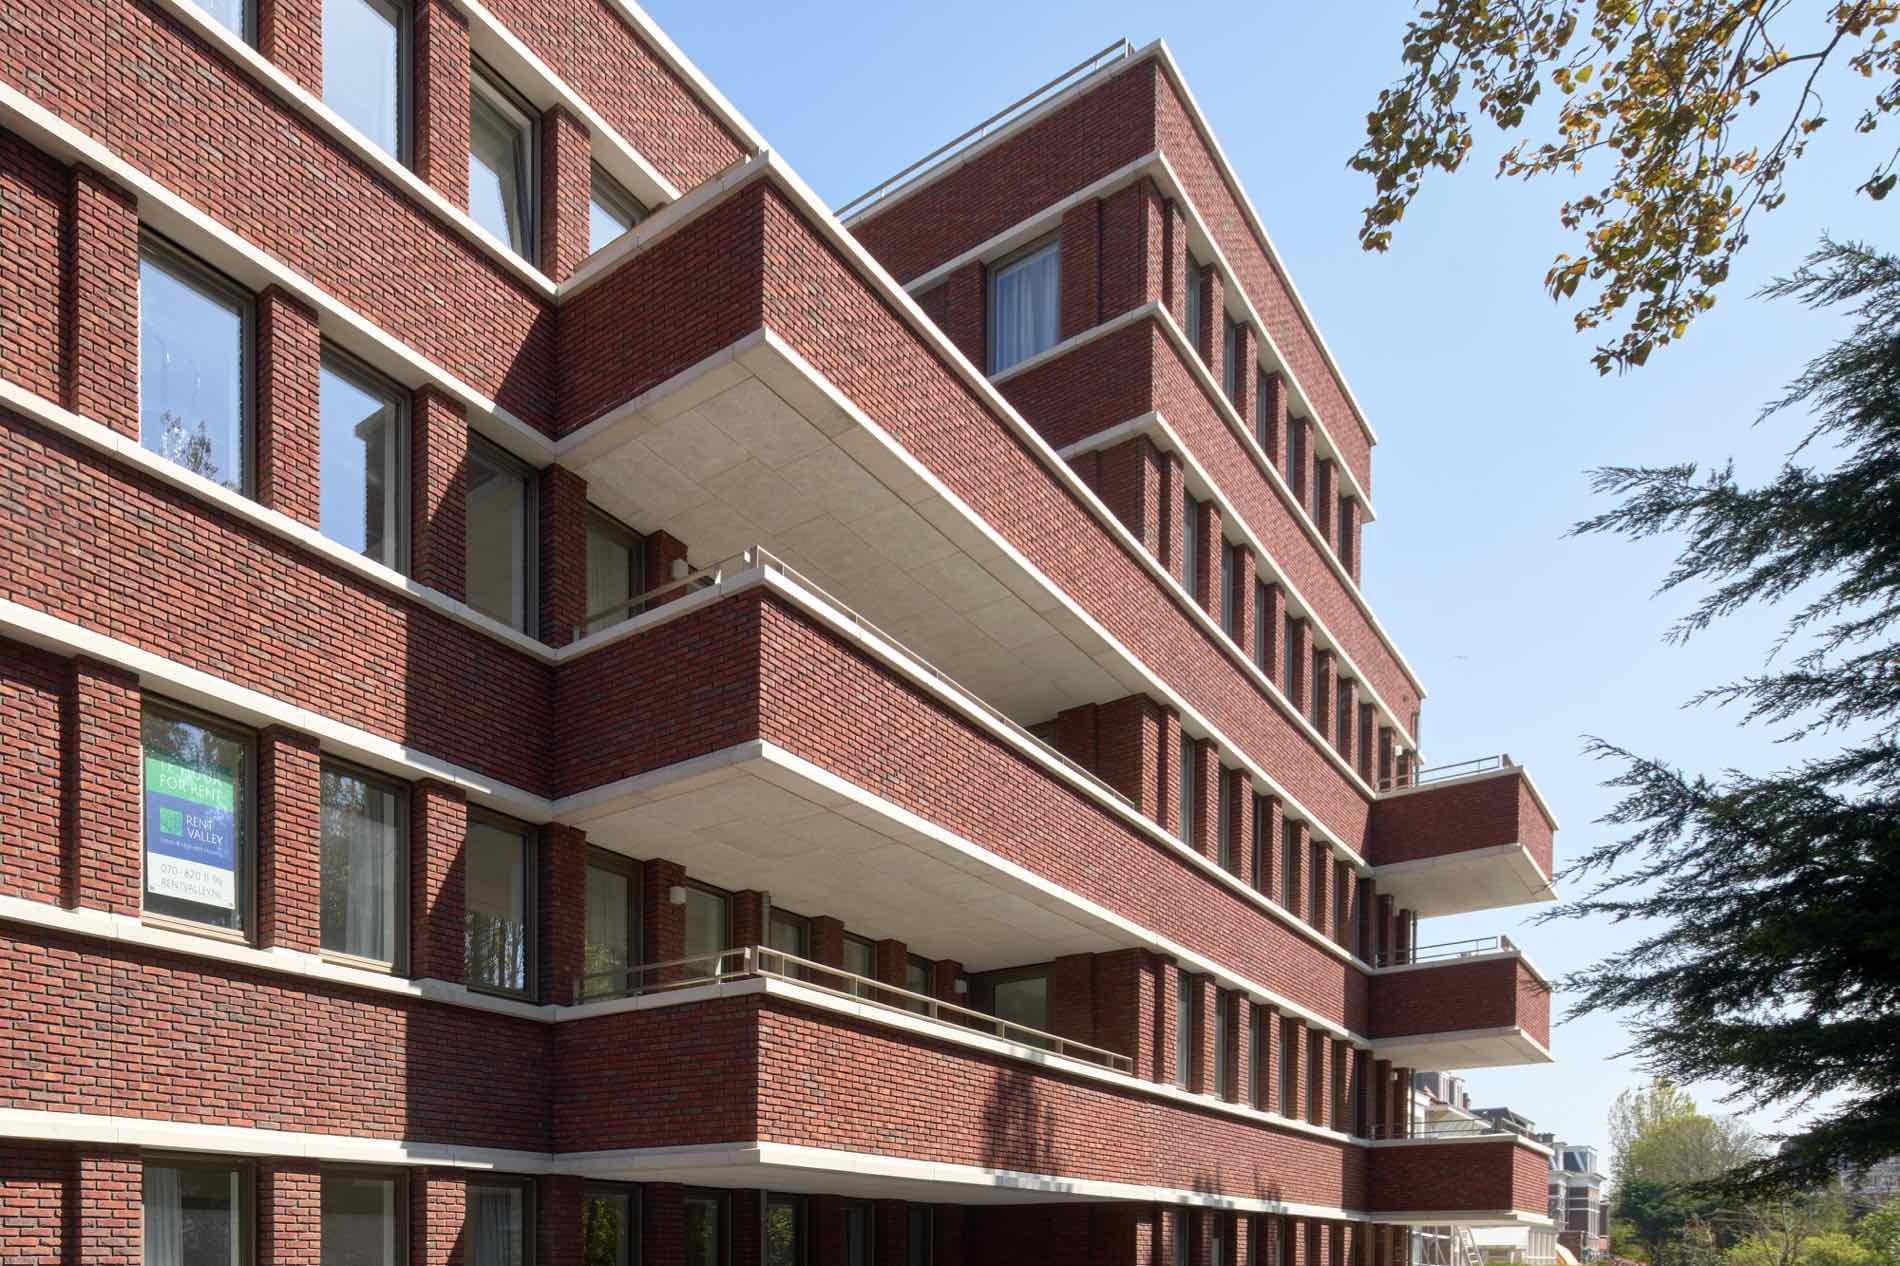 Appartementen Badhuisweg 4 - Geurst & Schulze architecten